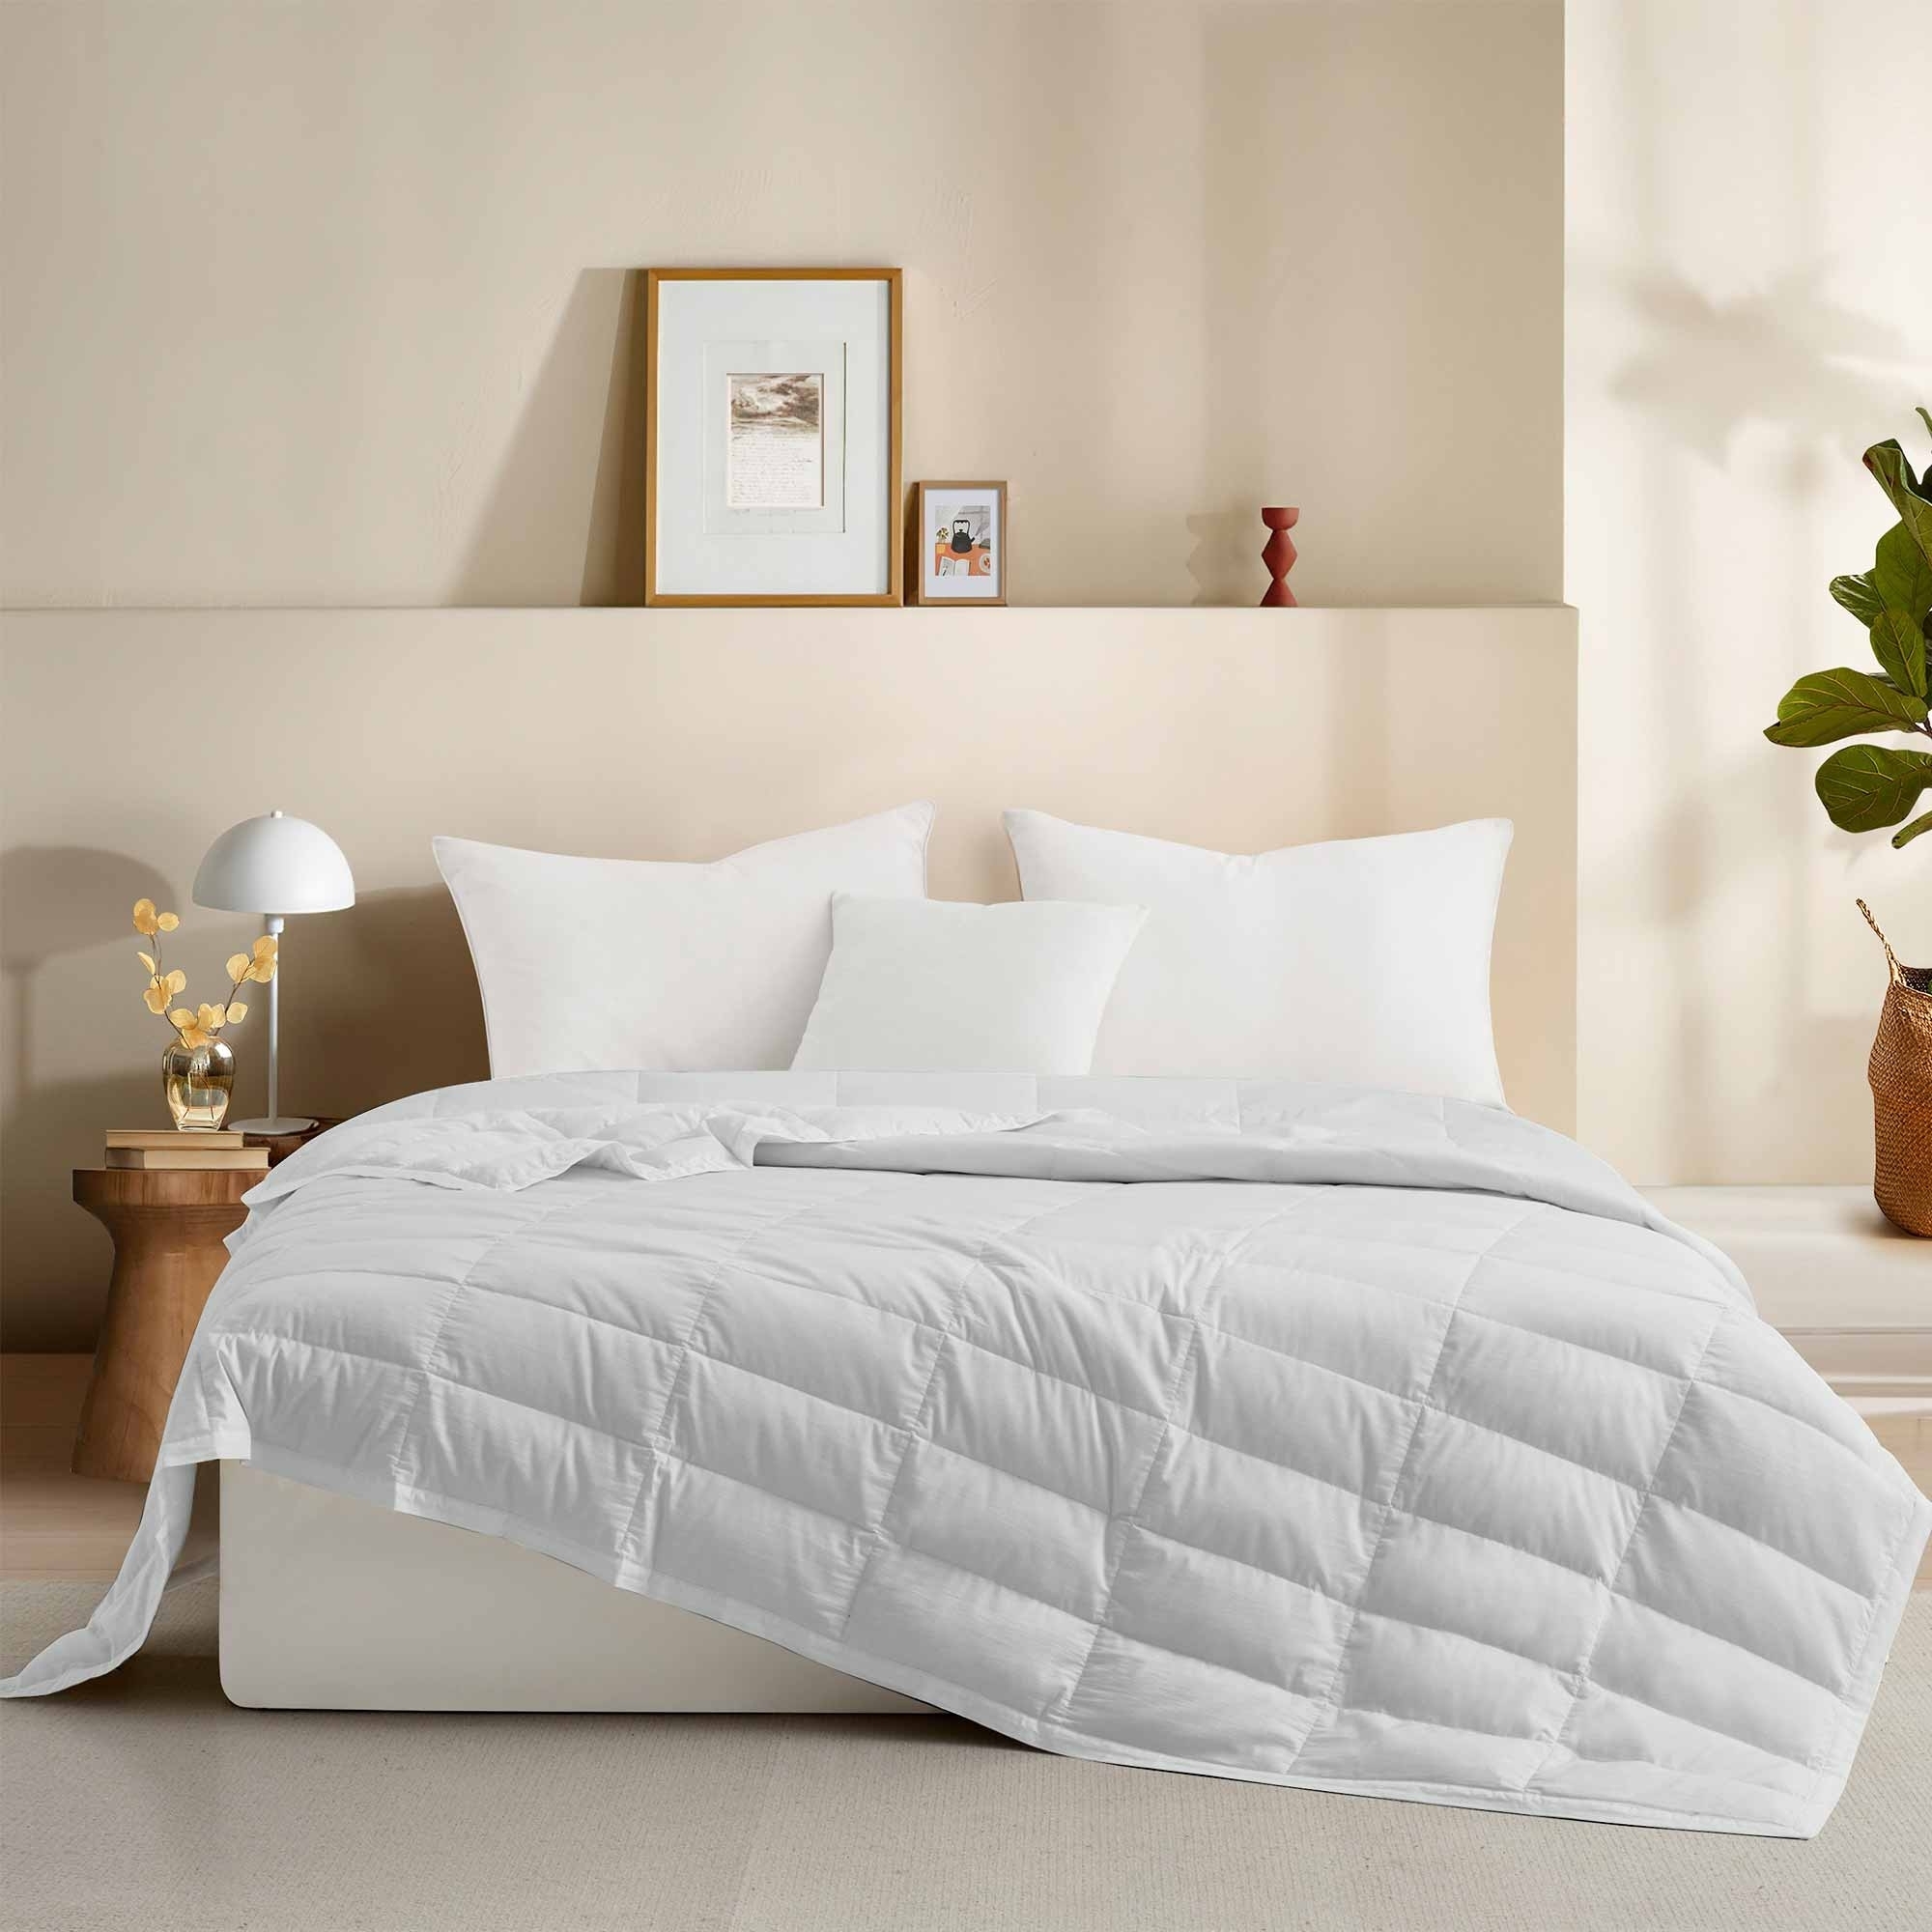 TENCELâ¢ Lyocell Lightweight Cooling Down Blanket-Luxurious Comfort Summer Blanket - Light Grey, King